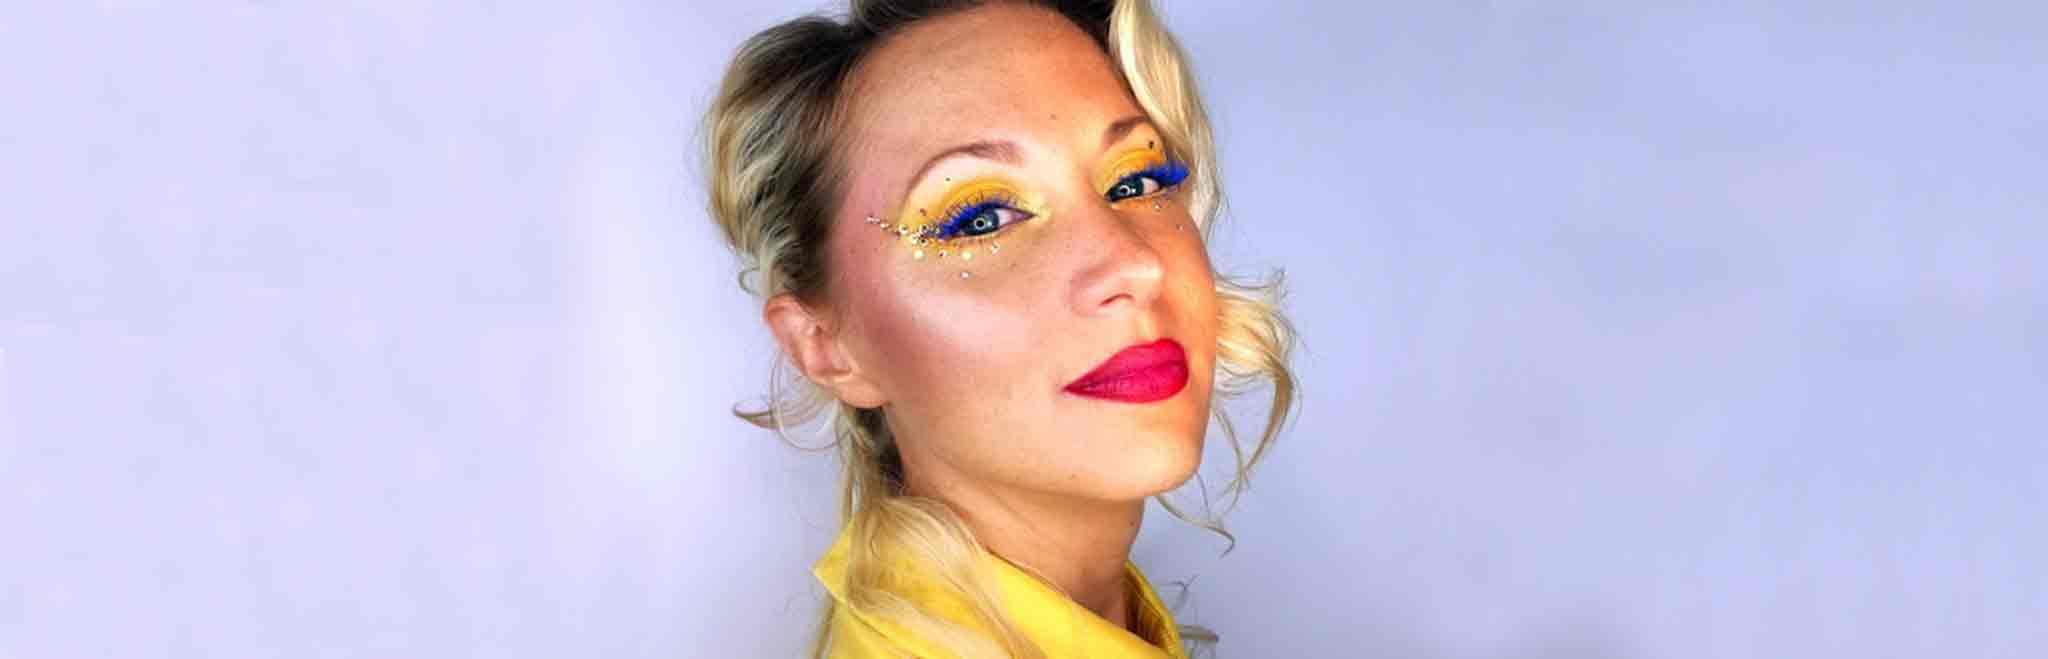 Femme blonde avec maquillage jaune mascara bleu et bouche ombrée rose et rouge